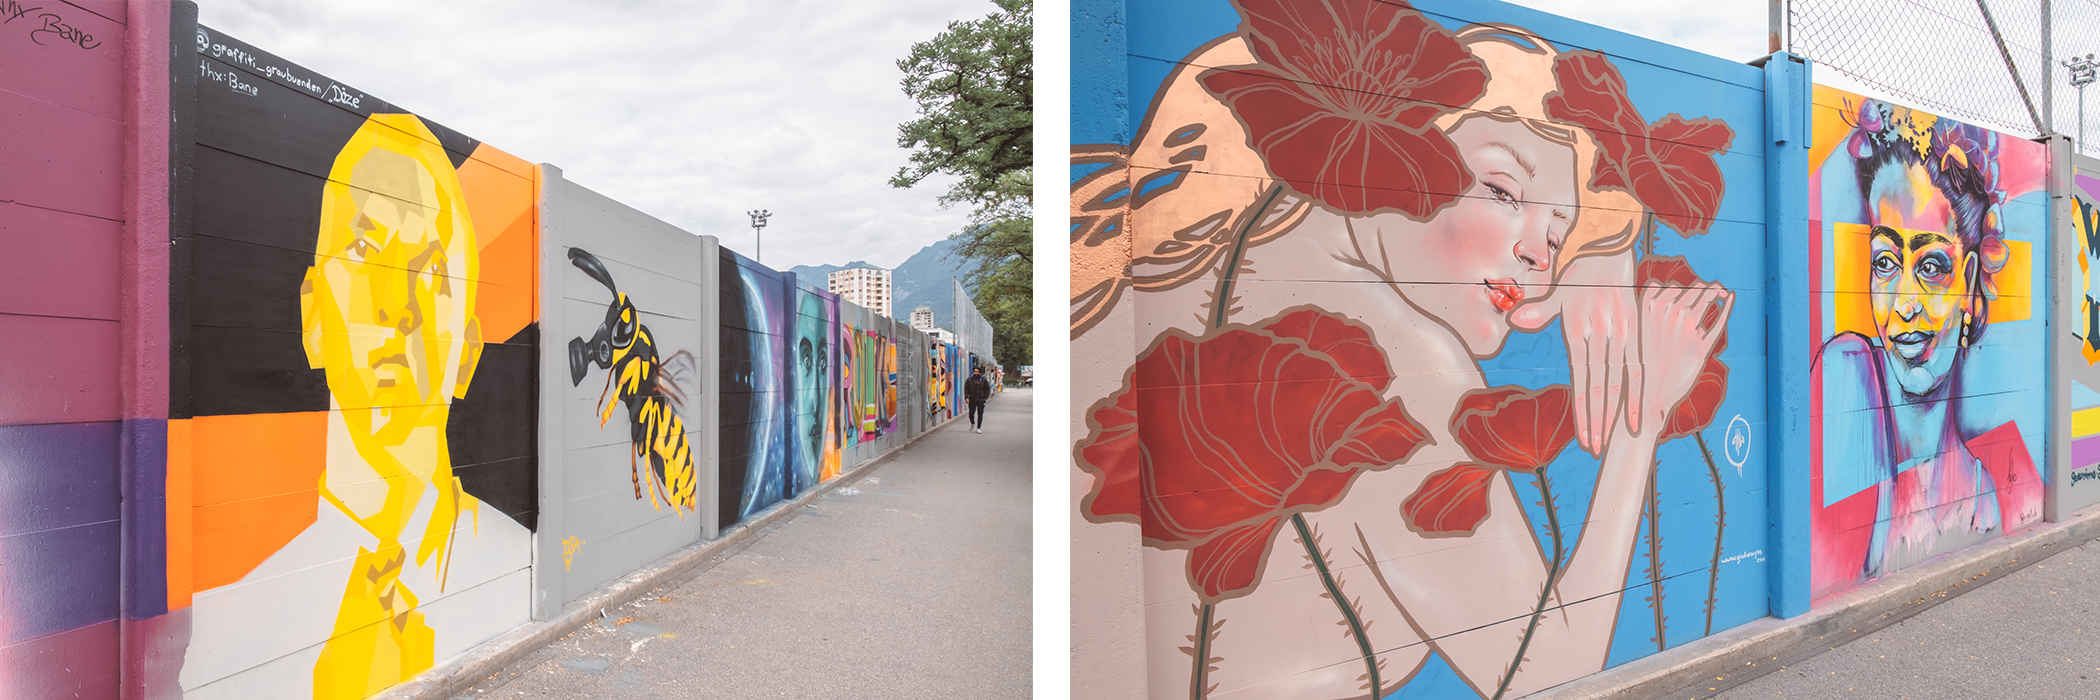 Le street art festival de Coire